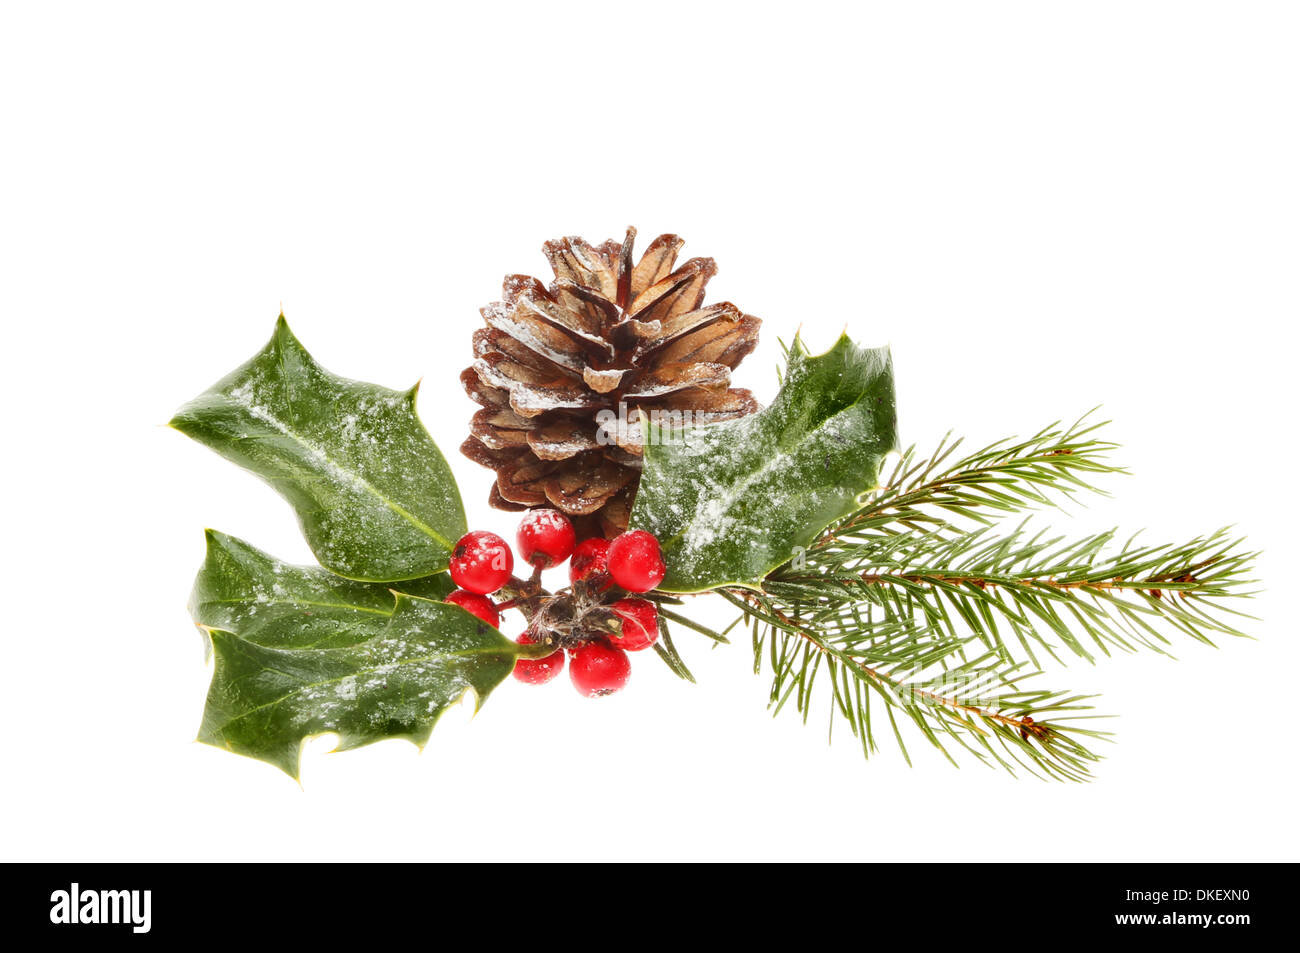 Weihnachten saisonale Laub ein Pinienzapfen, Tannennadeln und Stechpalme mit Beeren gegen weiß isoliert Stockfoto